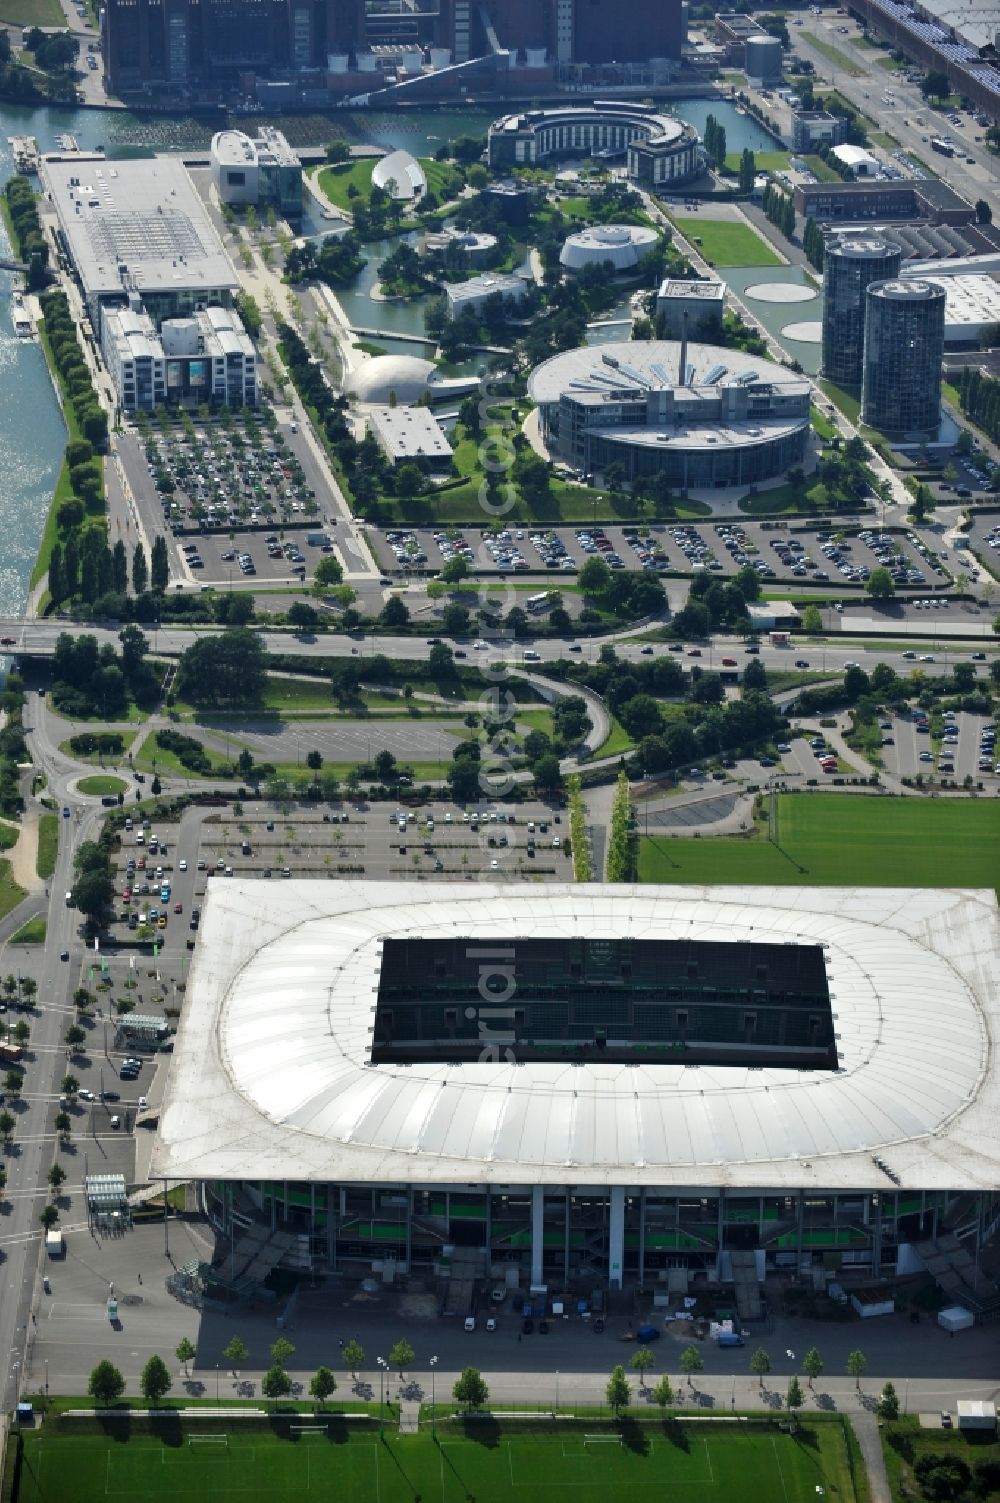 Aerial image Wolfsburg - View of the Volkswagen Arena in Wolfsburg Allerwiese 1 in 38 446. The modern stadium is home to VfL Wolfsburg